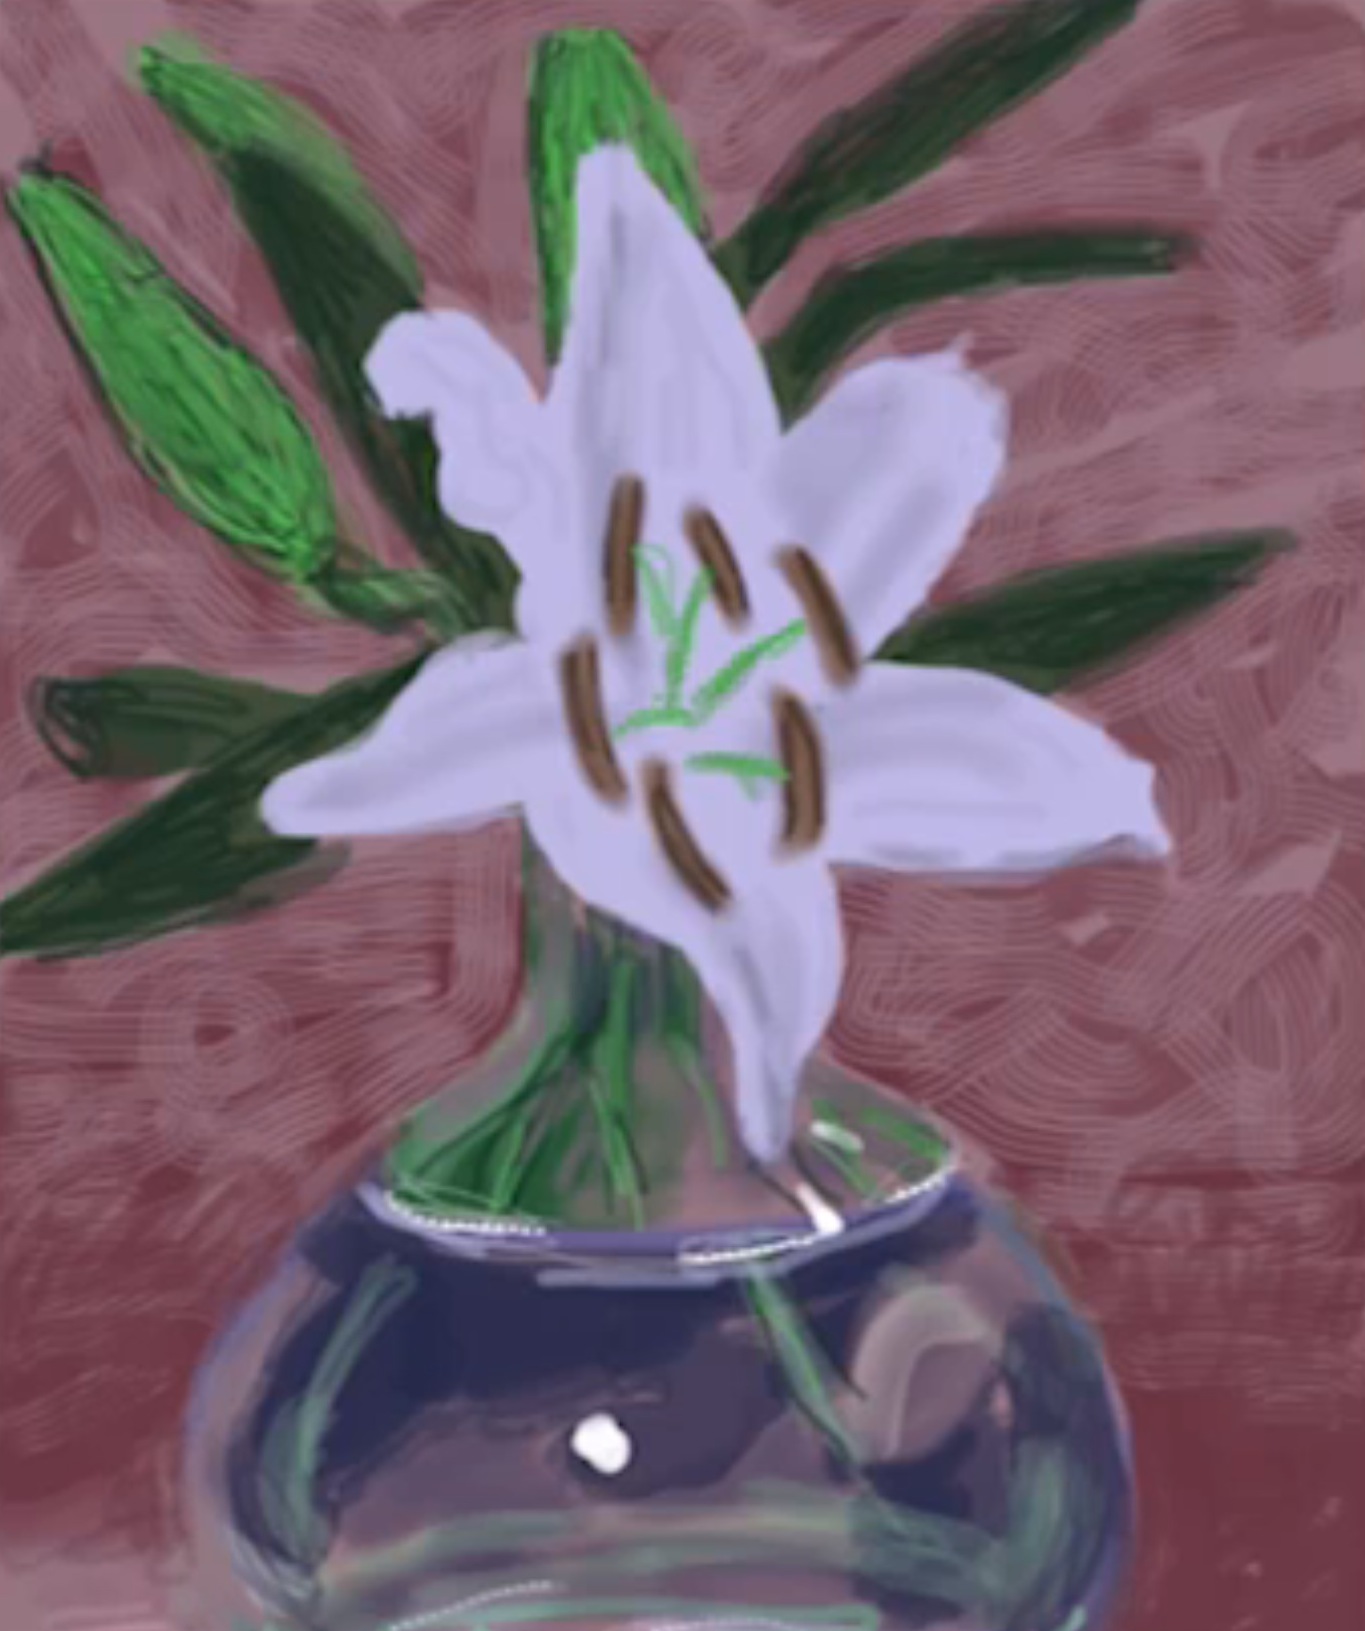 David Hockney iPad Flowers